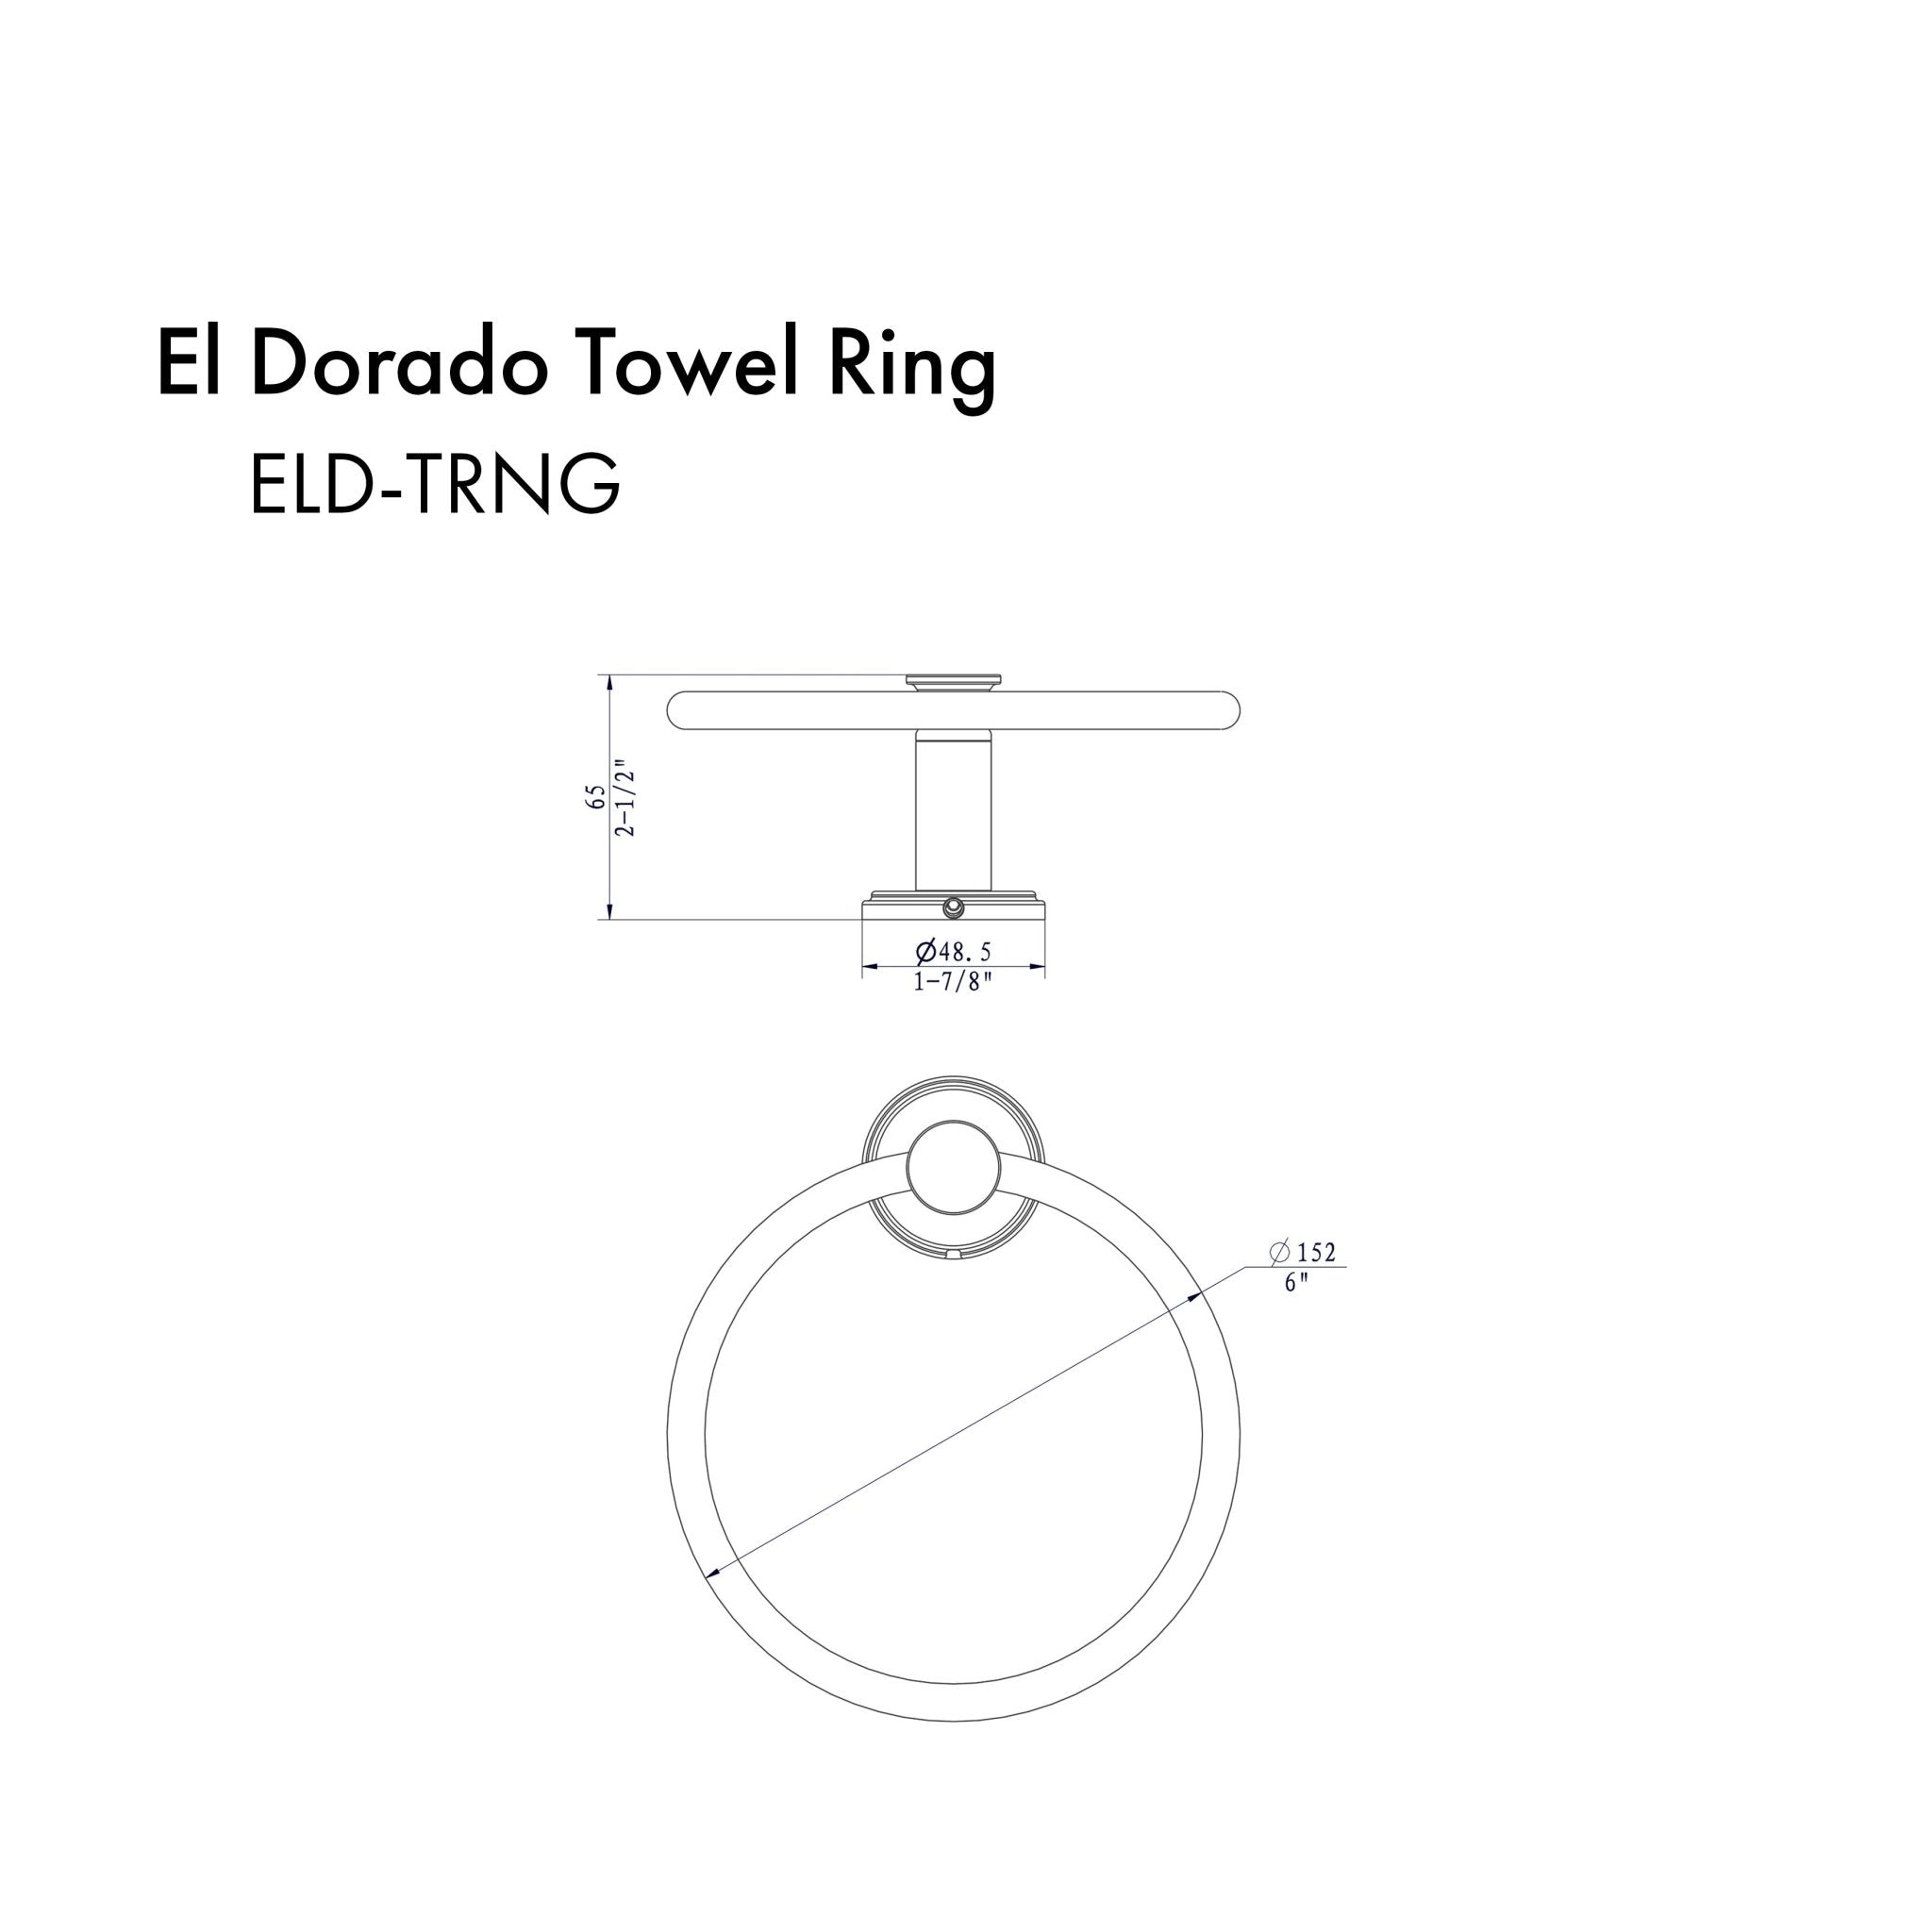 ZLINE El Dorado Towel Ring with color options (ELD-TRNG)